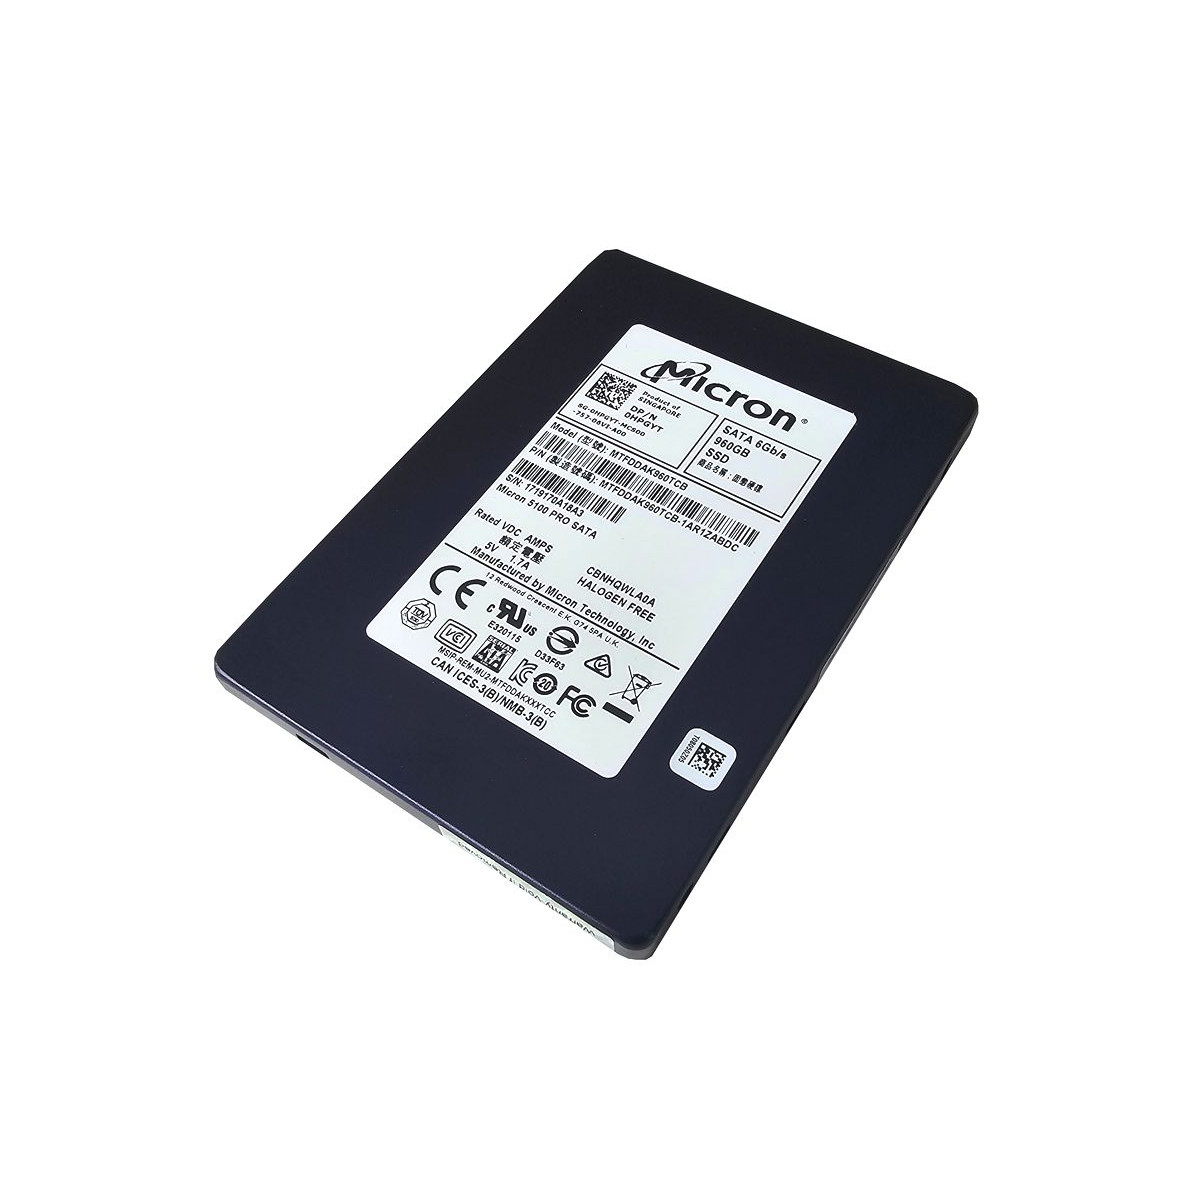 DYSK DELL MICRON 960GB SSD SATA 6G 2,5 MLC 0HPGYT